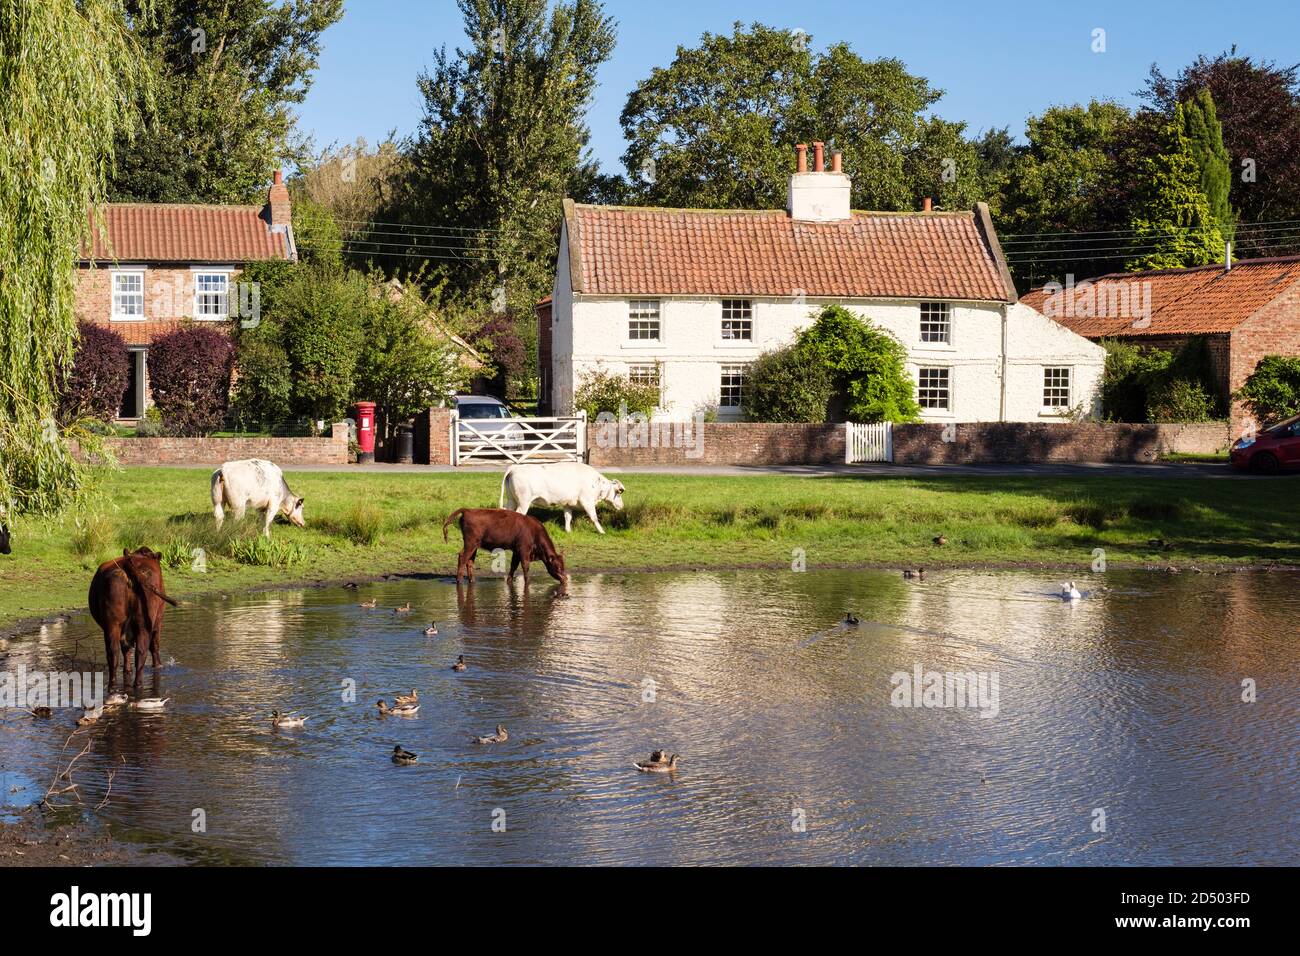 Élevage de bétail en liberté paître par un étang de canard sur un village de campagne vert surplombait par de vieux cottages. Nun Monkton, York, Yorkshire du Nord, Angleterre, Royaume-Uni, Grande-Bretagne Banque D'Images